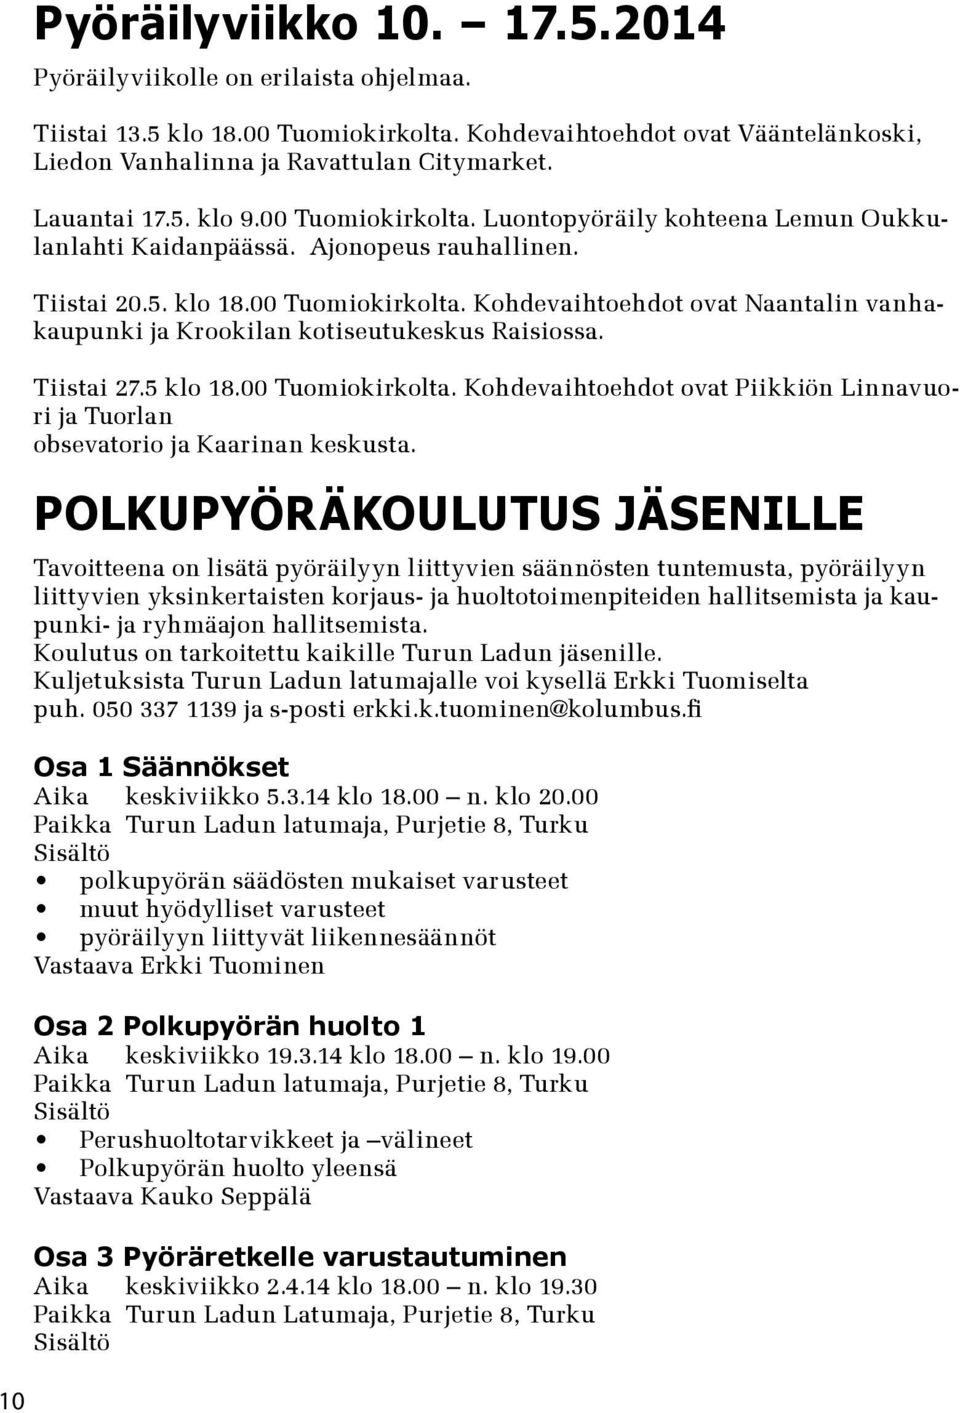 Tiistai 27.5 klo 18.00 Tuomiokirkolta. Kohdevaihtoehdot ovat Piikkiön Linnavuori ja Tuorlan obsevatorio ja Kaarinan keskusta.